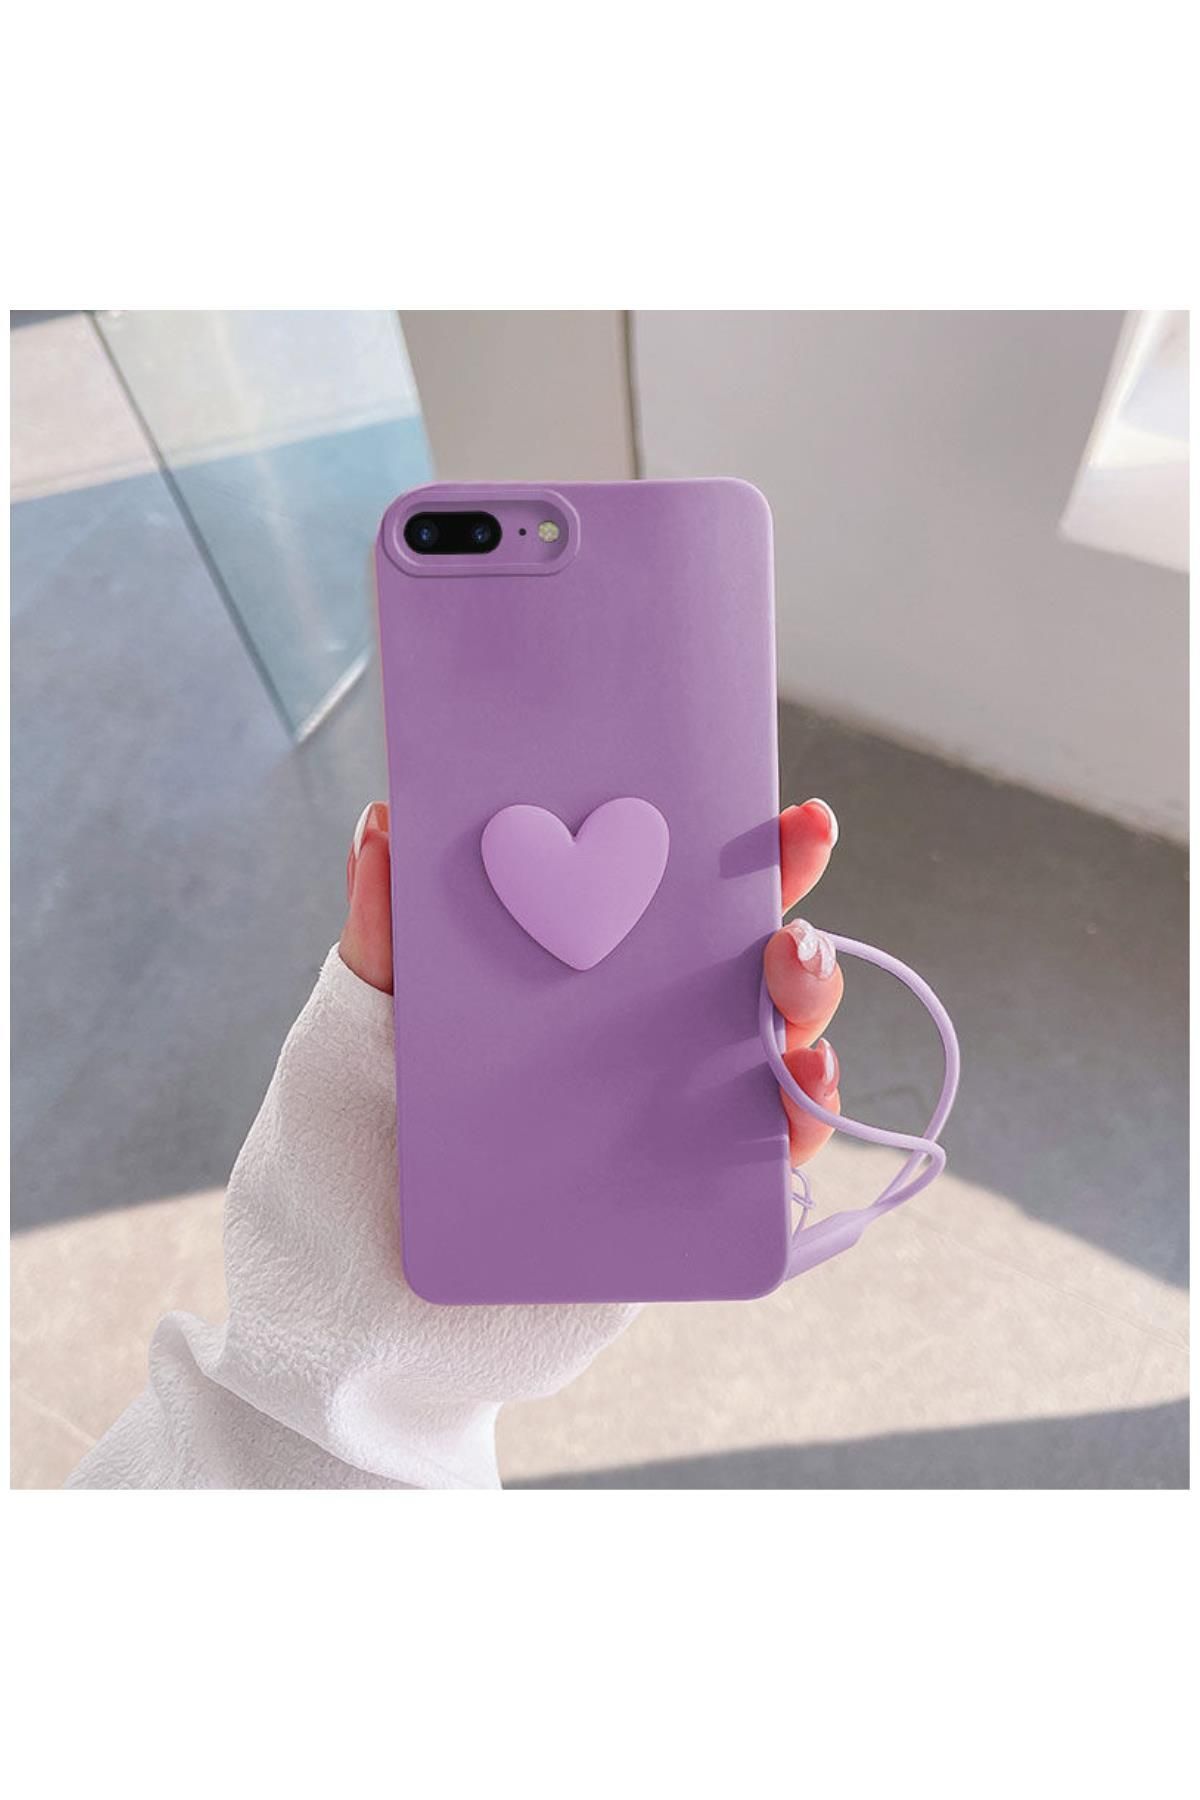 Zebana Apple Iphone 8 Plus Uyumlu Kılıf Kalpli Love Silikon Kılıf Lila